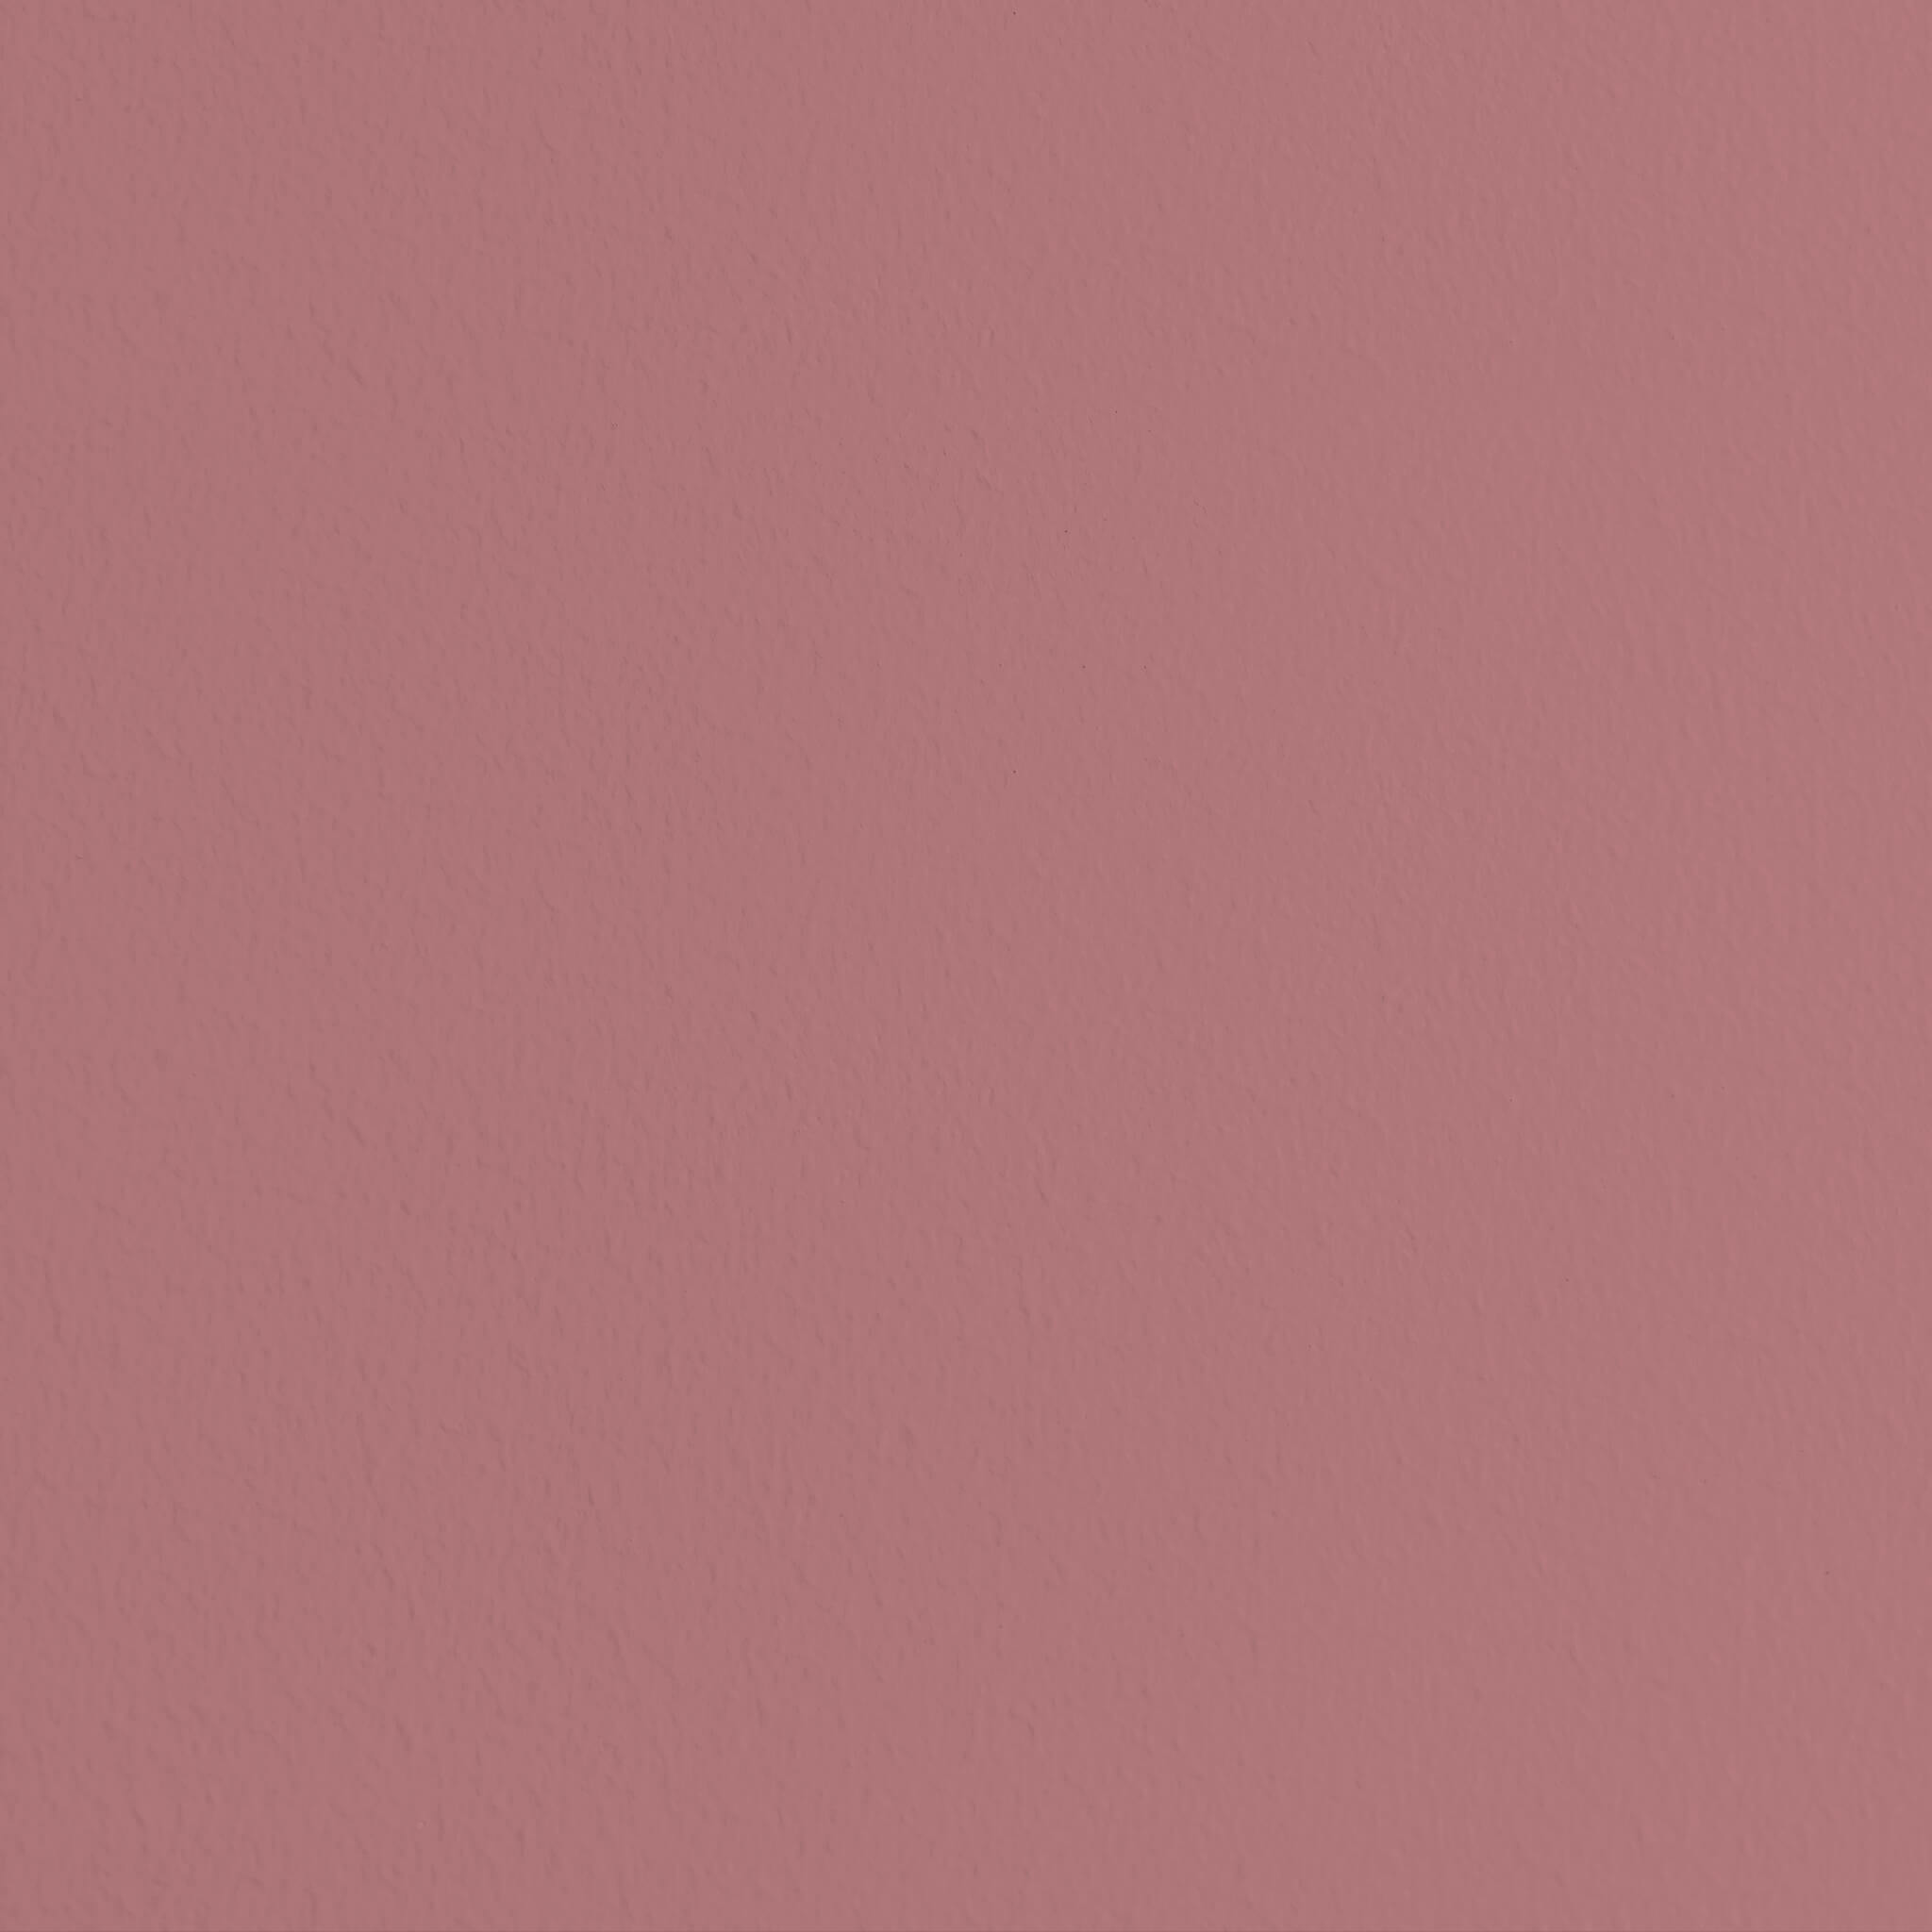 MissPompadour Pink mit Grau - Die Nützliche 1L